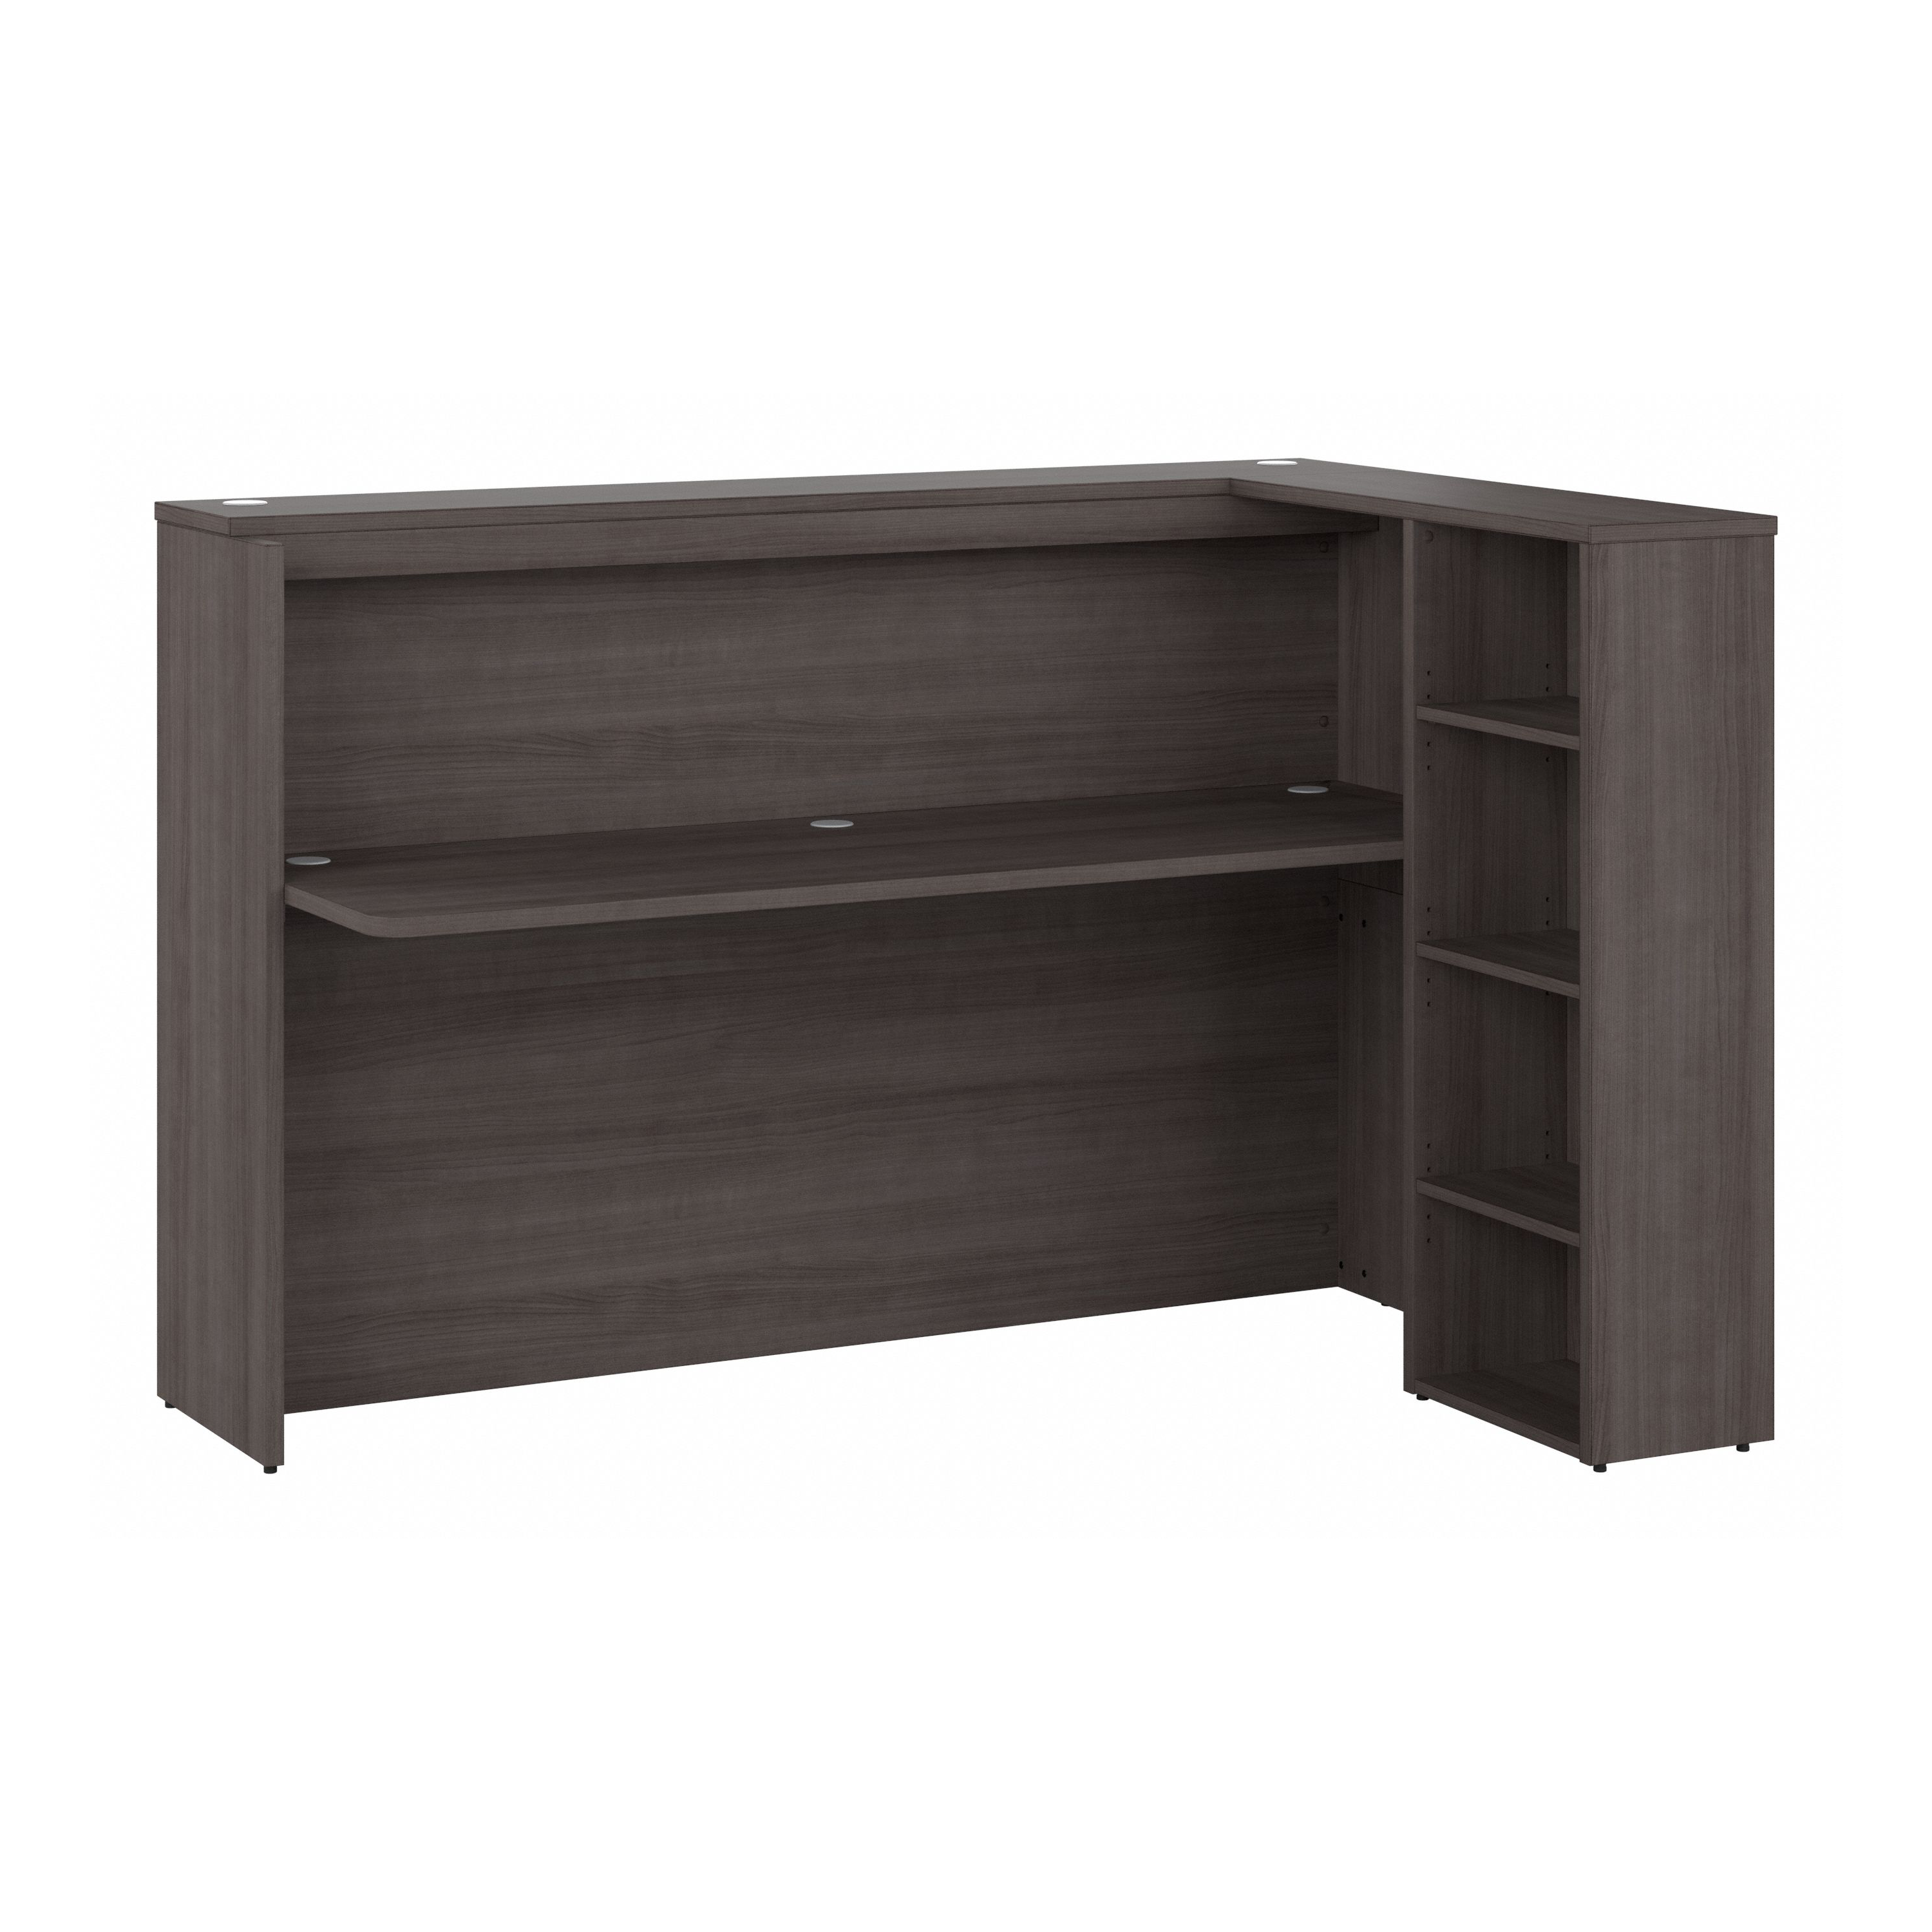 Shop Bush Business Furniture Studio C 72W Corner Bar Cabinet with Shelves 02 SCD572SGK-Z2 #color_storm gray